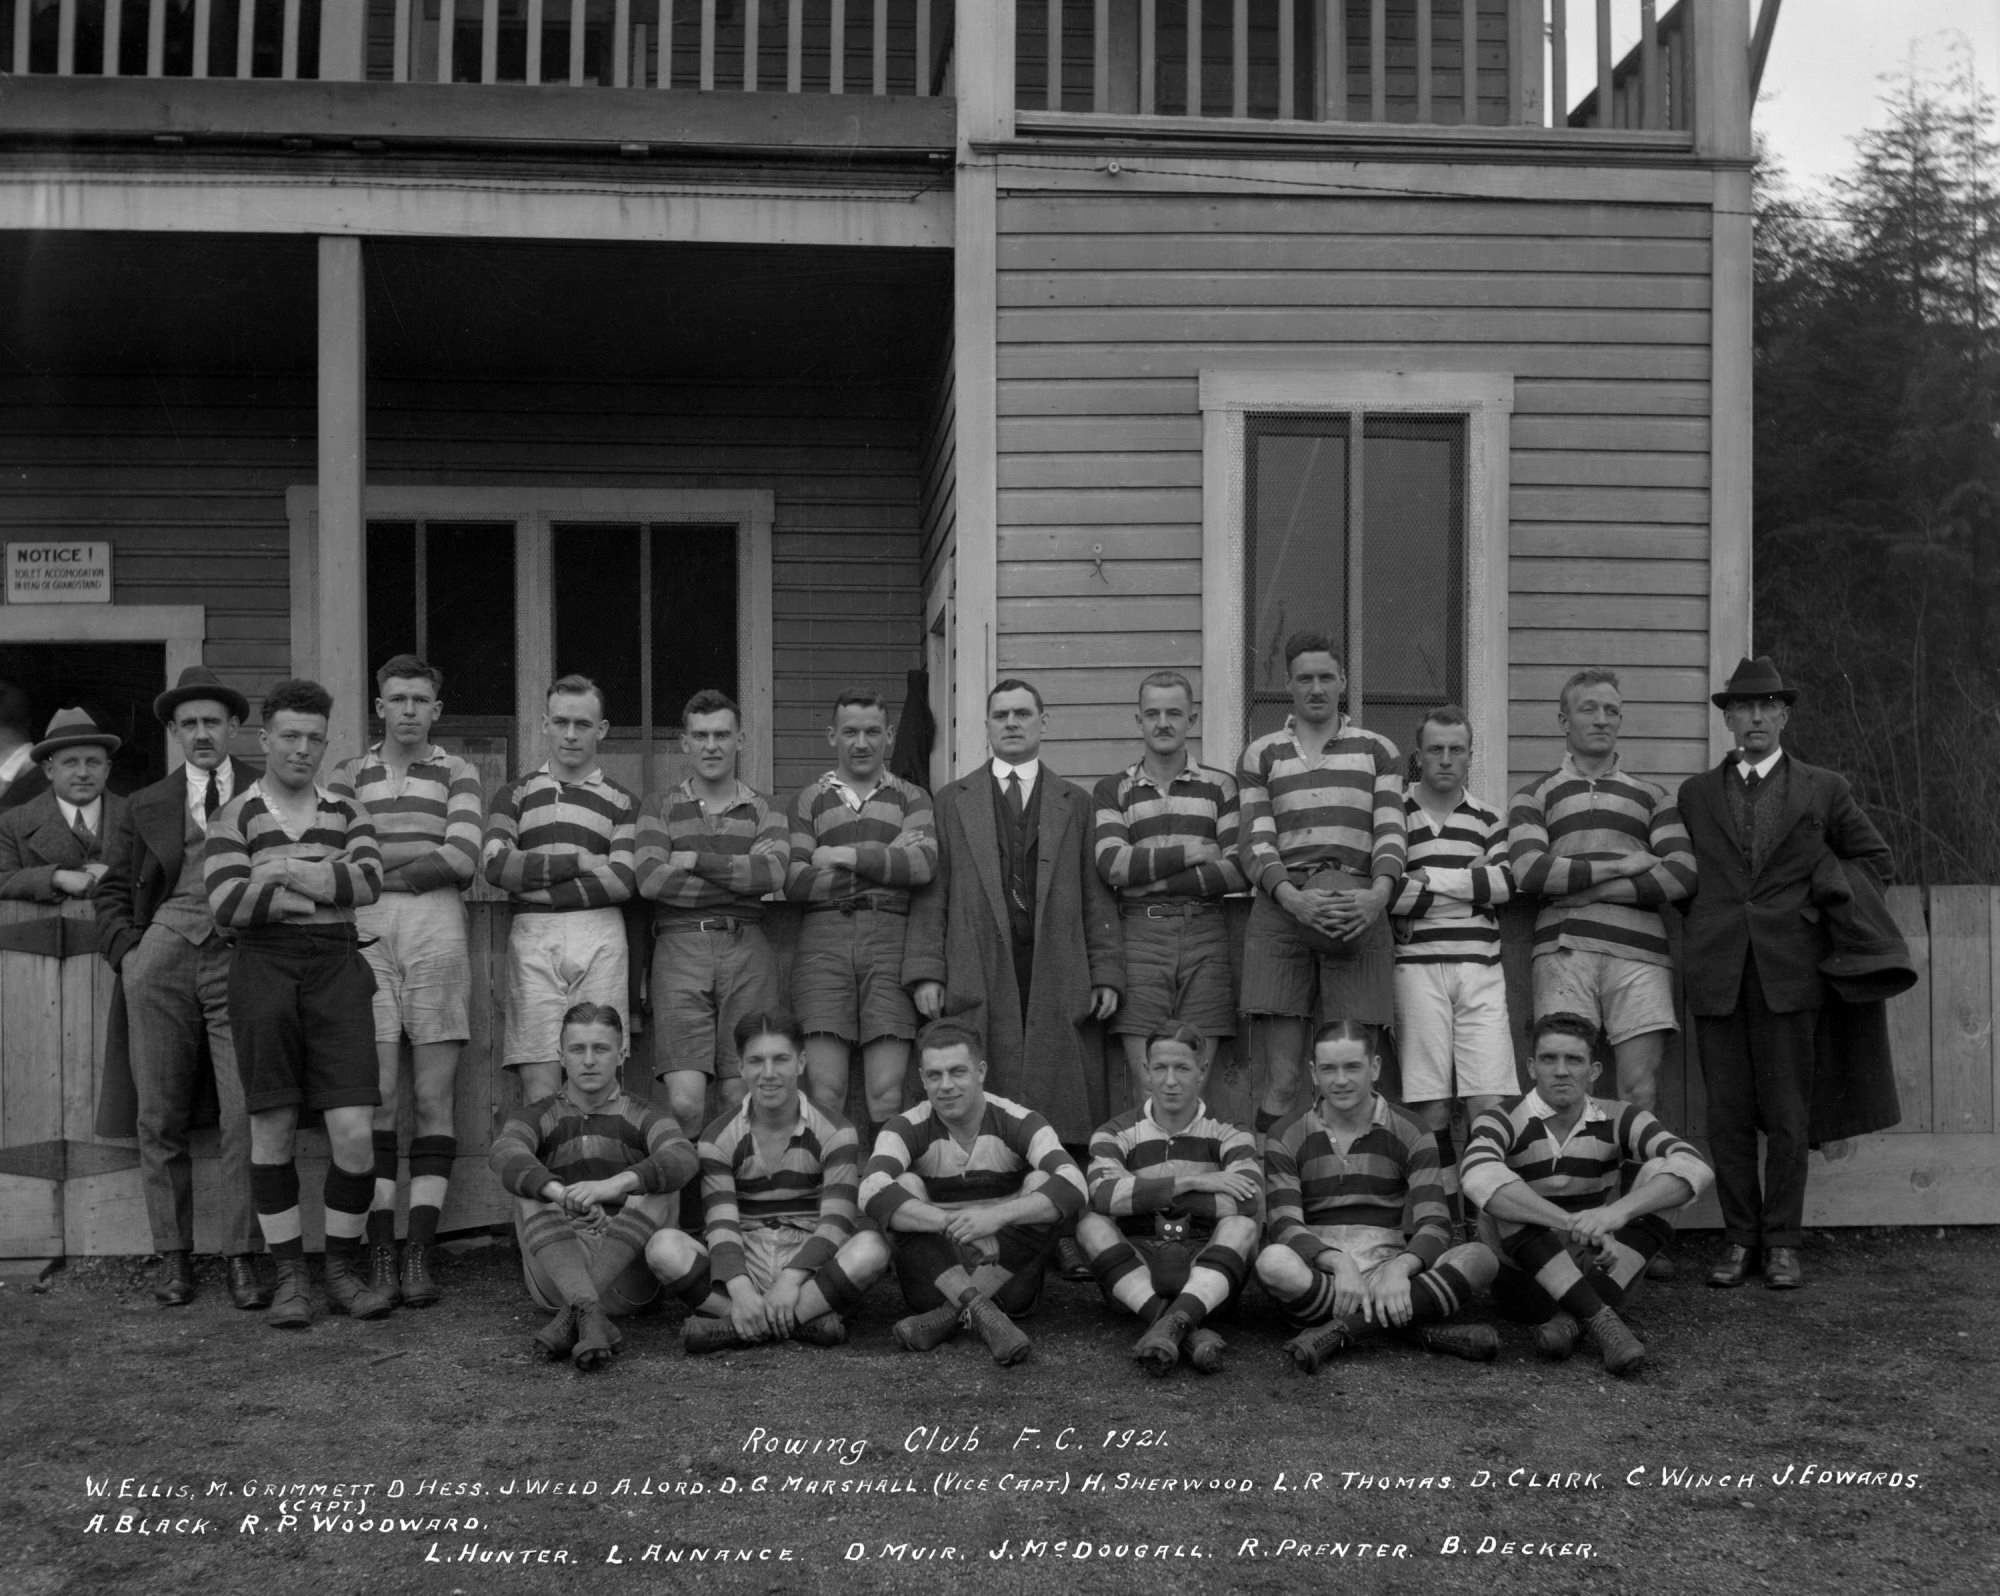 1921-rowing-club-FC